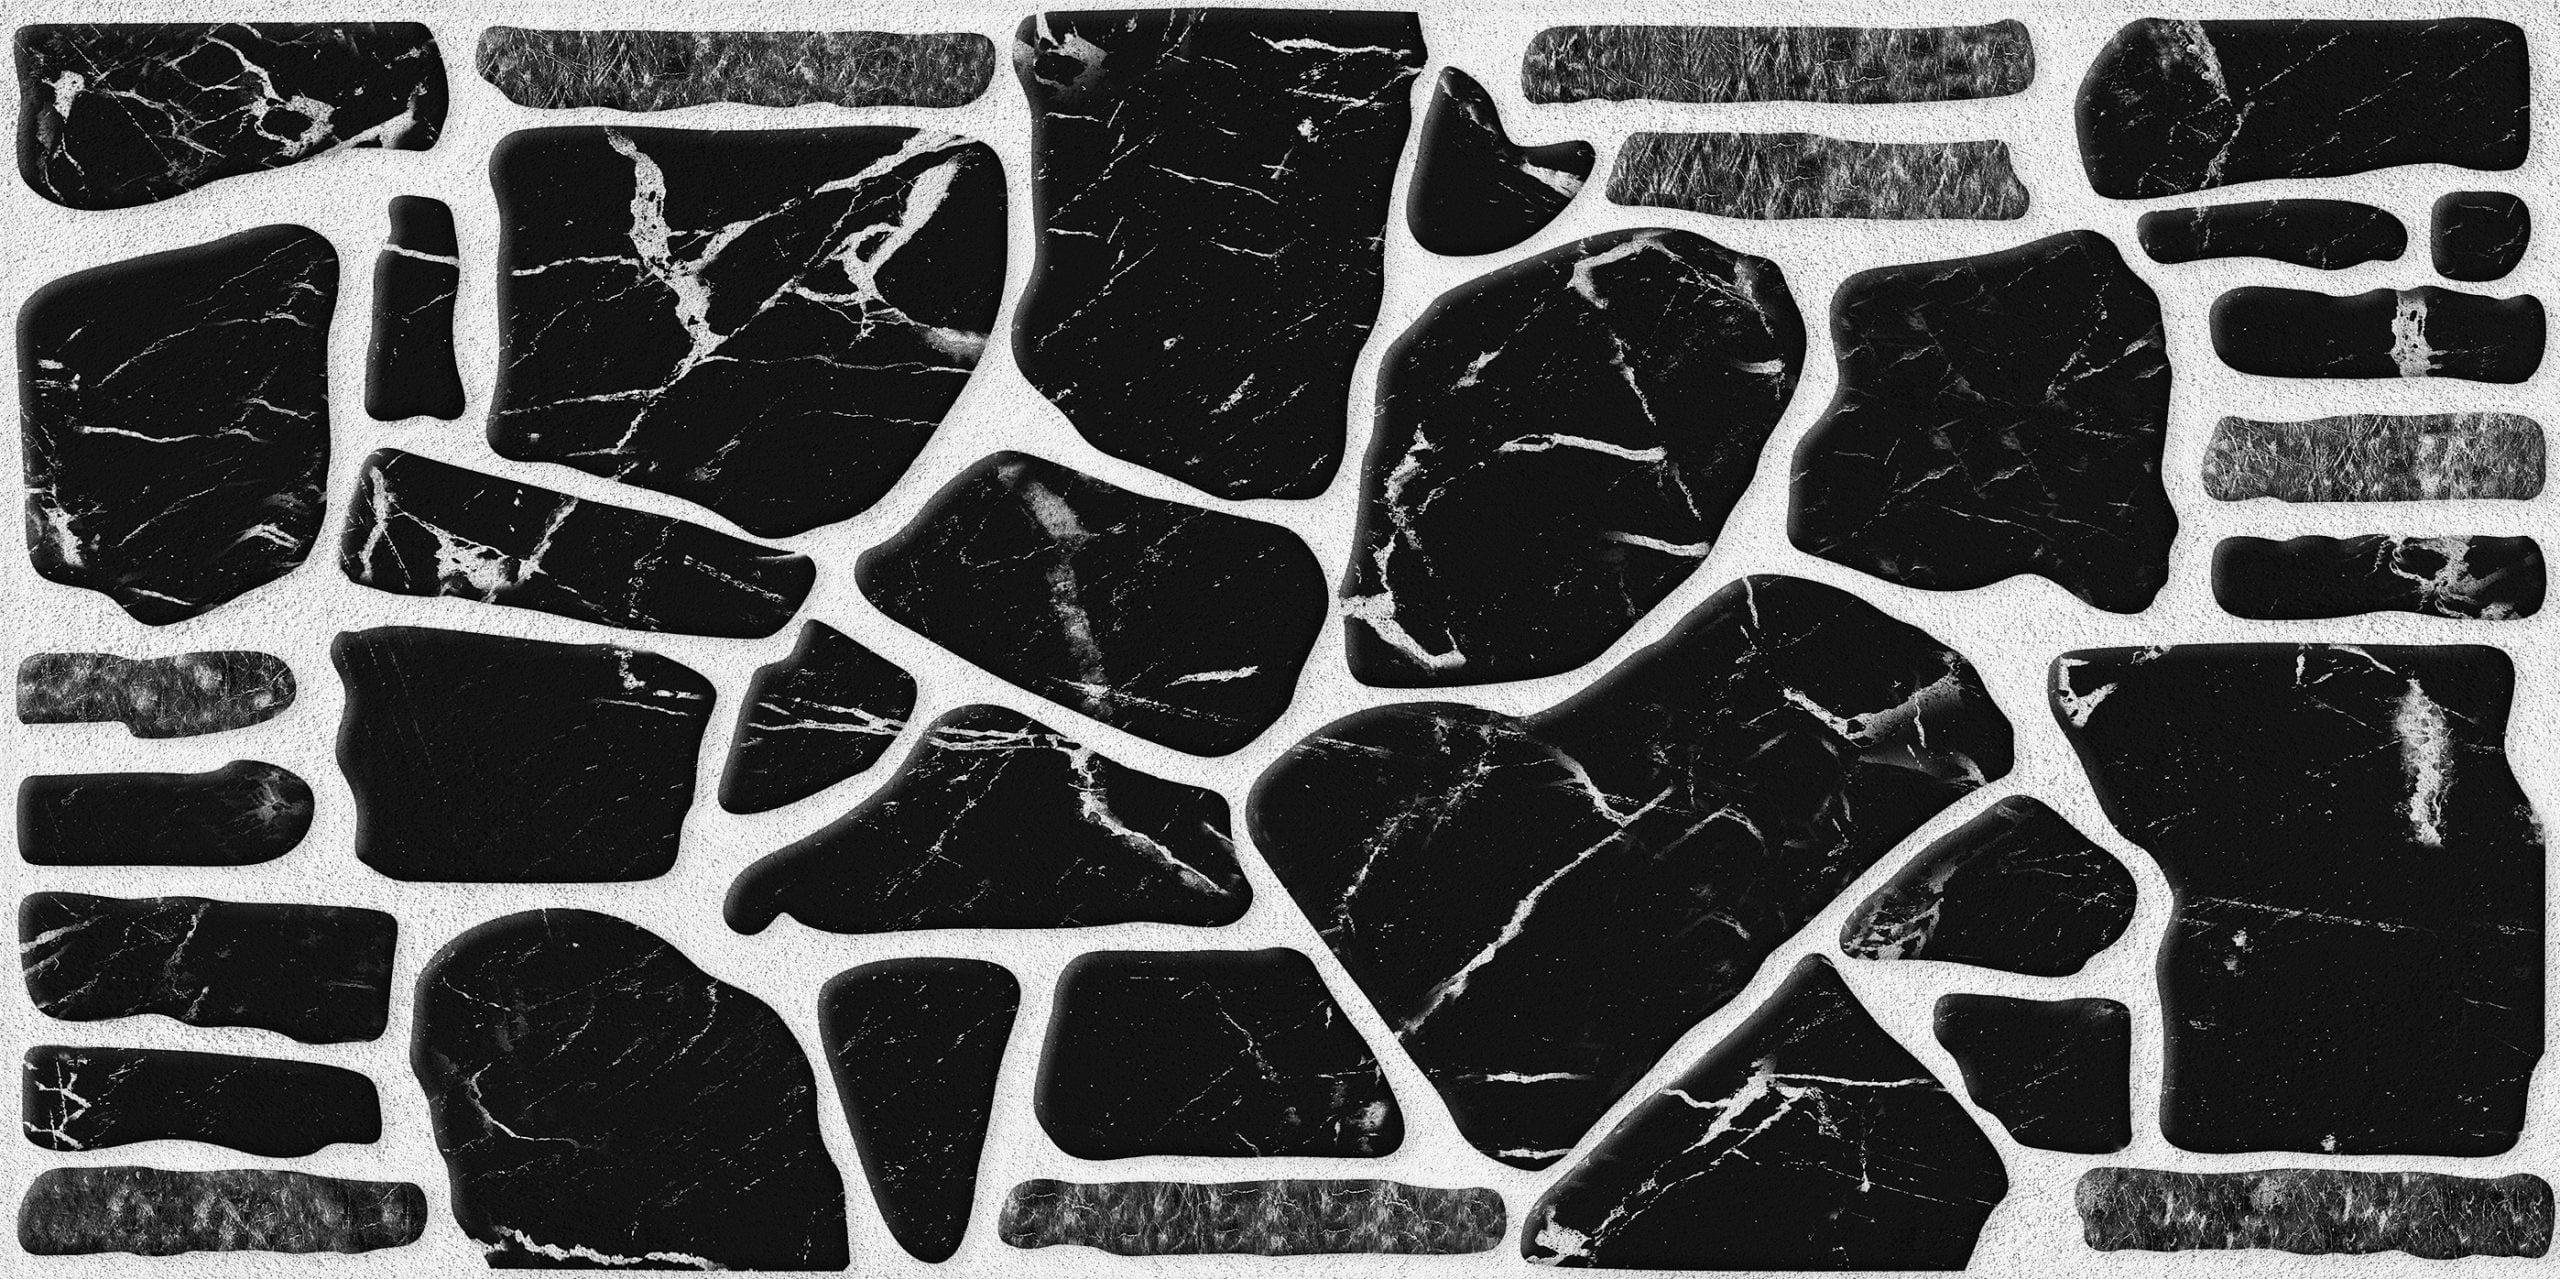 Baksteenstrip 3D Wandpaneel EPS Steenlook Zwart Wit Marmer - Isolerend - Voor binnen/buiten - 100x50x2cm - KY005 OUTLET